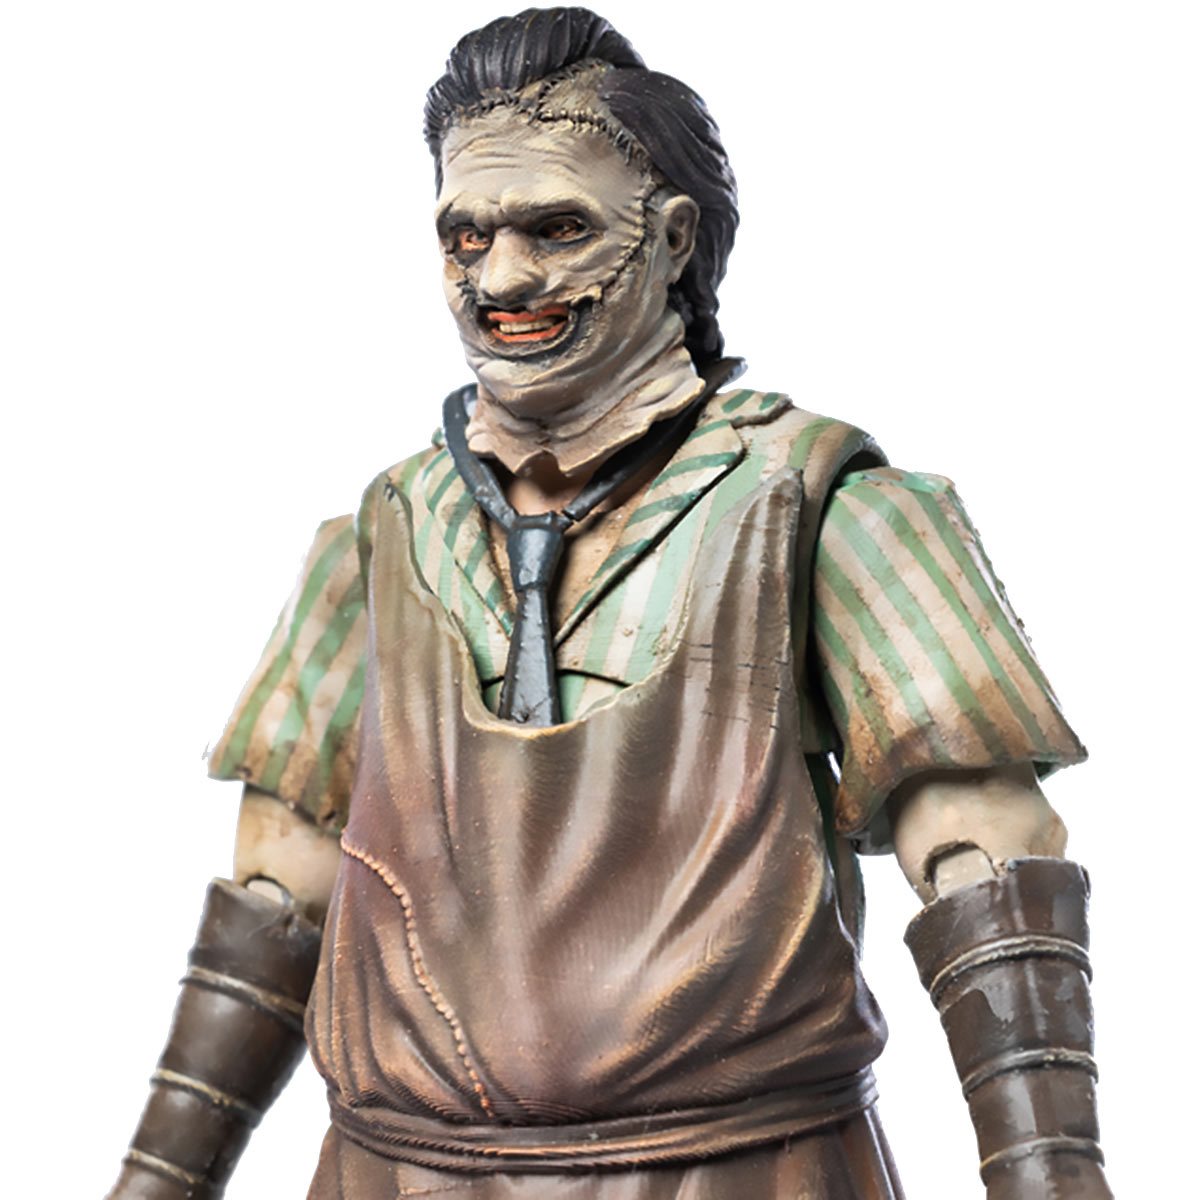 vastleggen winkelwagen voorjaar Texas Chainsaw Massacre 2003 Leatherface Killing Mask Exquisite Mini 1:18  Scale Action Figure